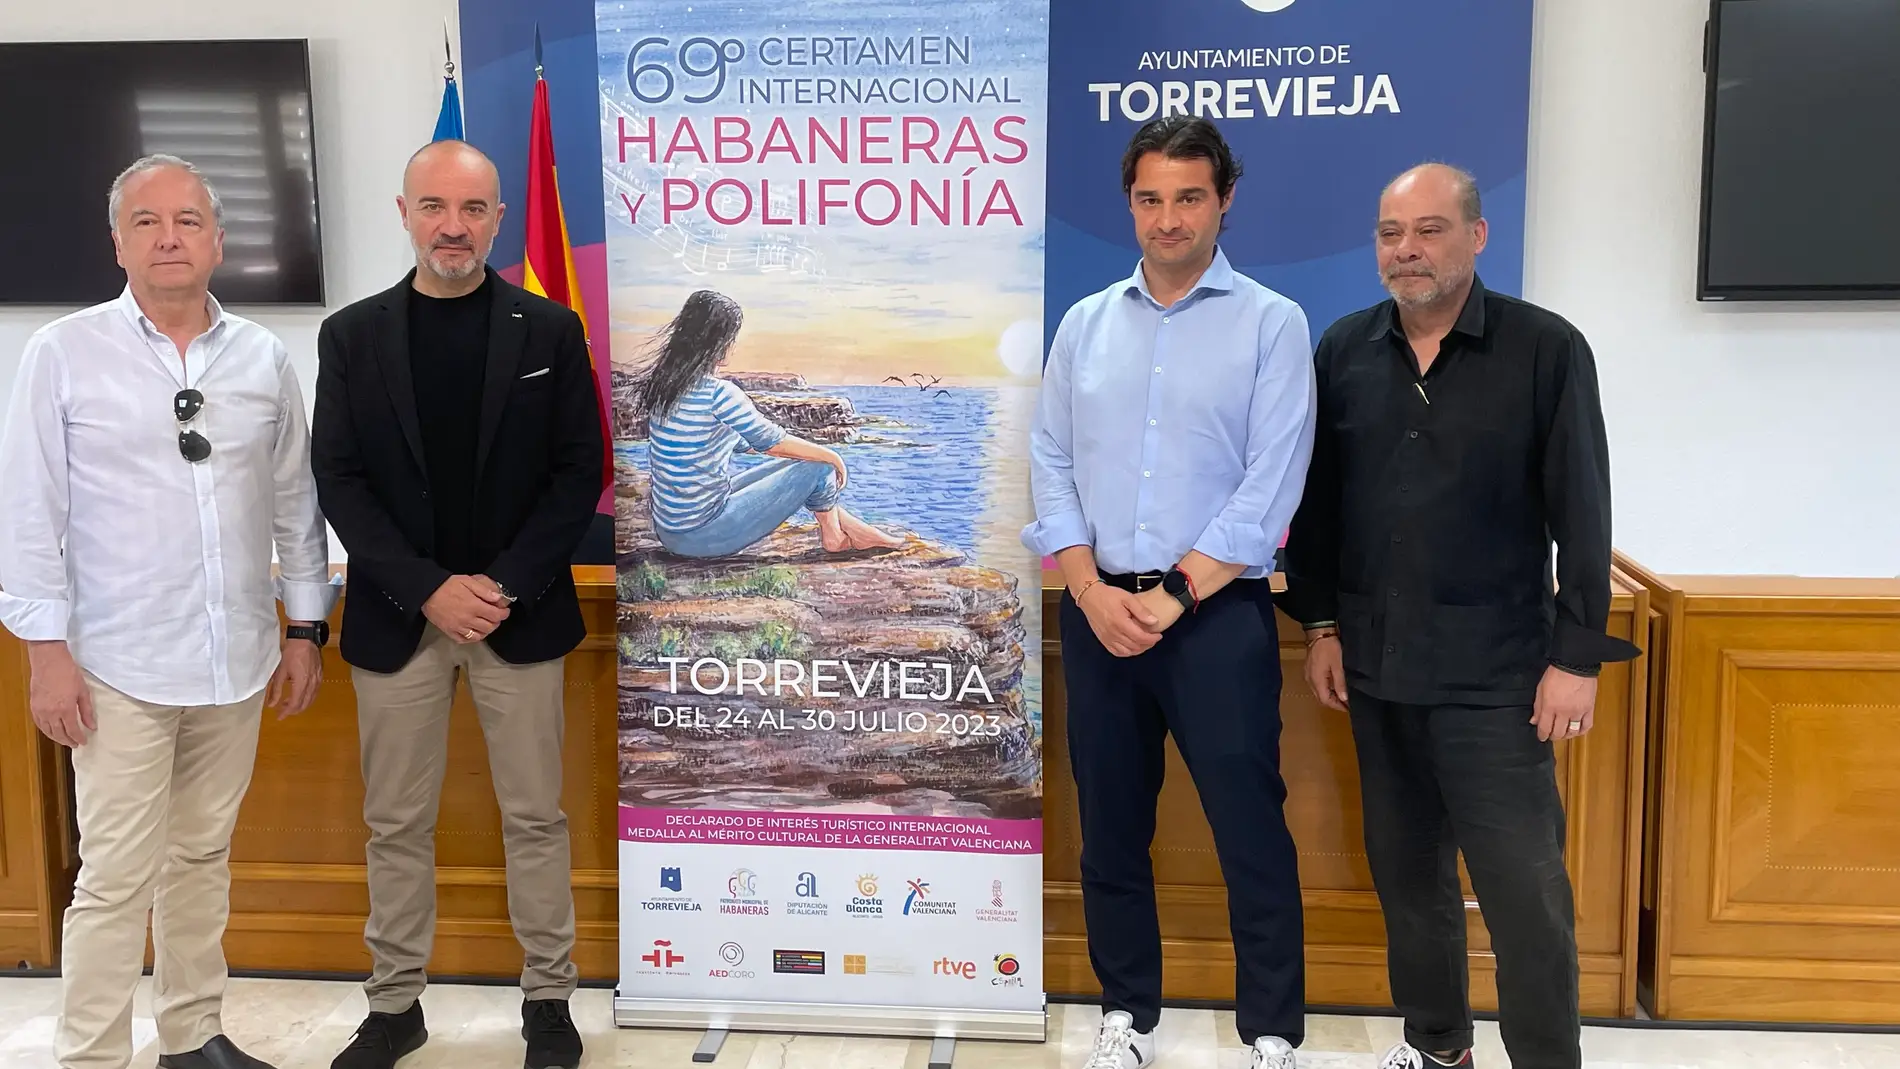 Torrevieja presenta el 69º Certamen Internacional de Habaneras y Polifonía del 24 al 30 julio 